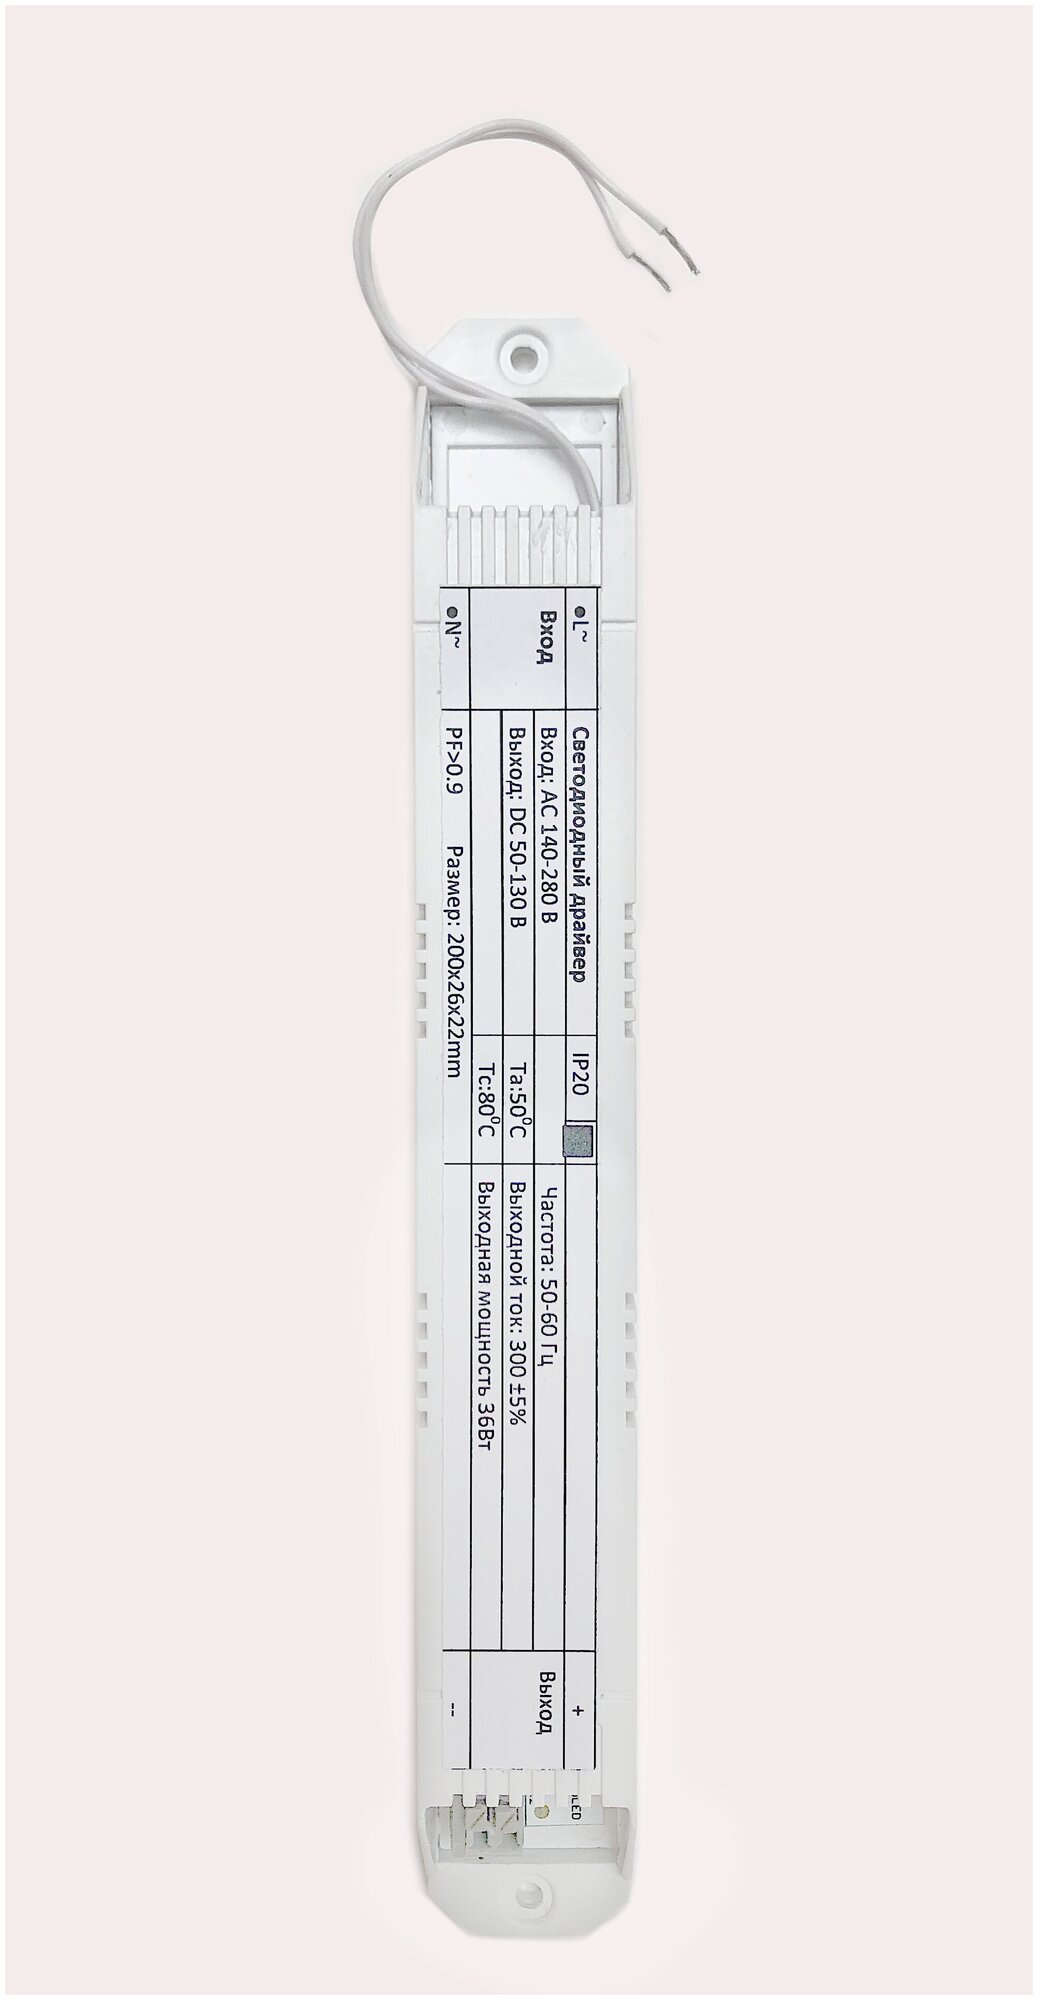 Драйвер для светодиодного светильника мощностью от 5 до 45 Вт, 300 мА, блок питания - фотография № 1